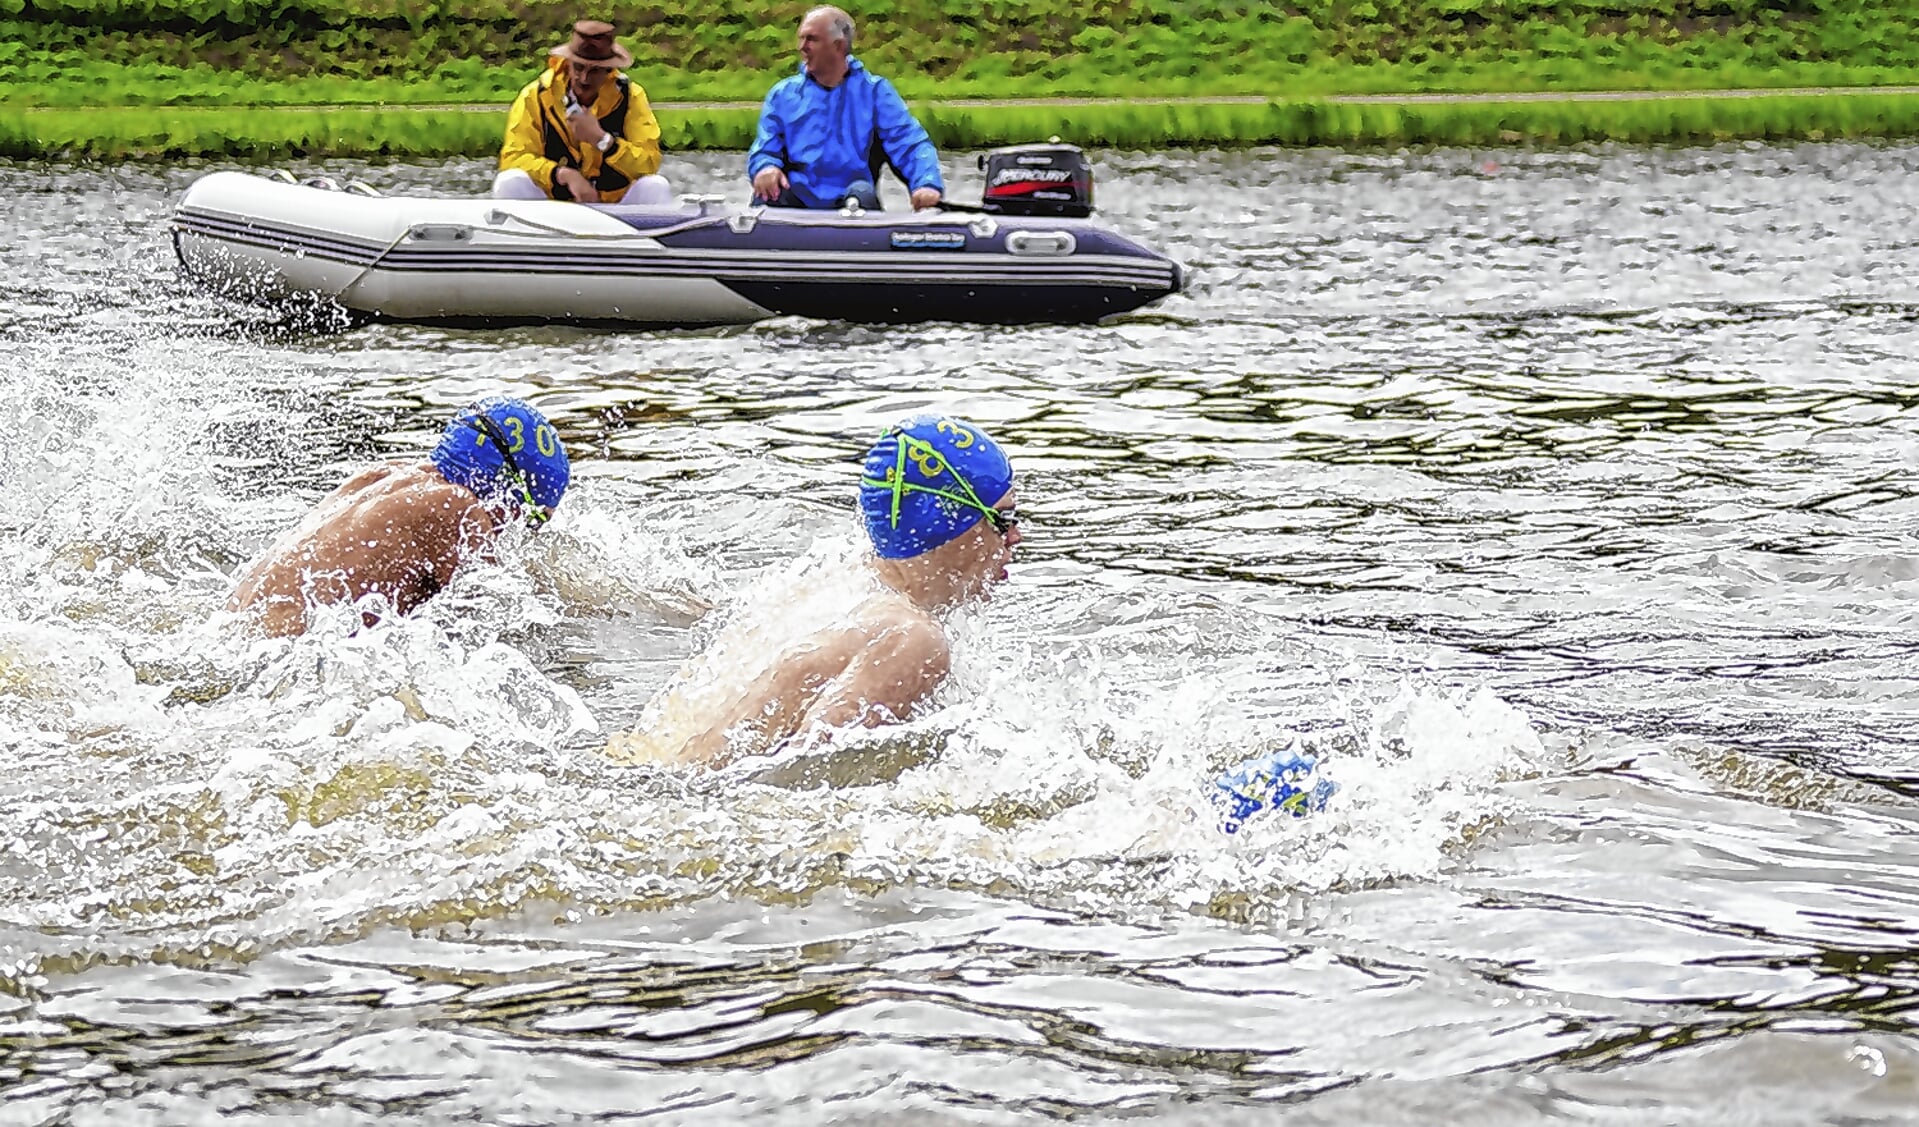 Vanwege de aangetroffen E-coli-bacterie werd de jaarlijkse zwemwedstrijd die op 18 augustus op de Bosbaan gehouden zou worden, afgelast.